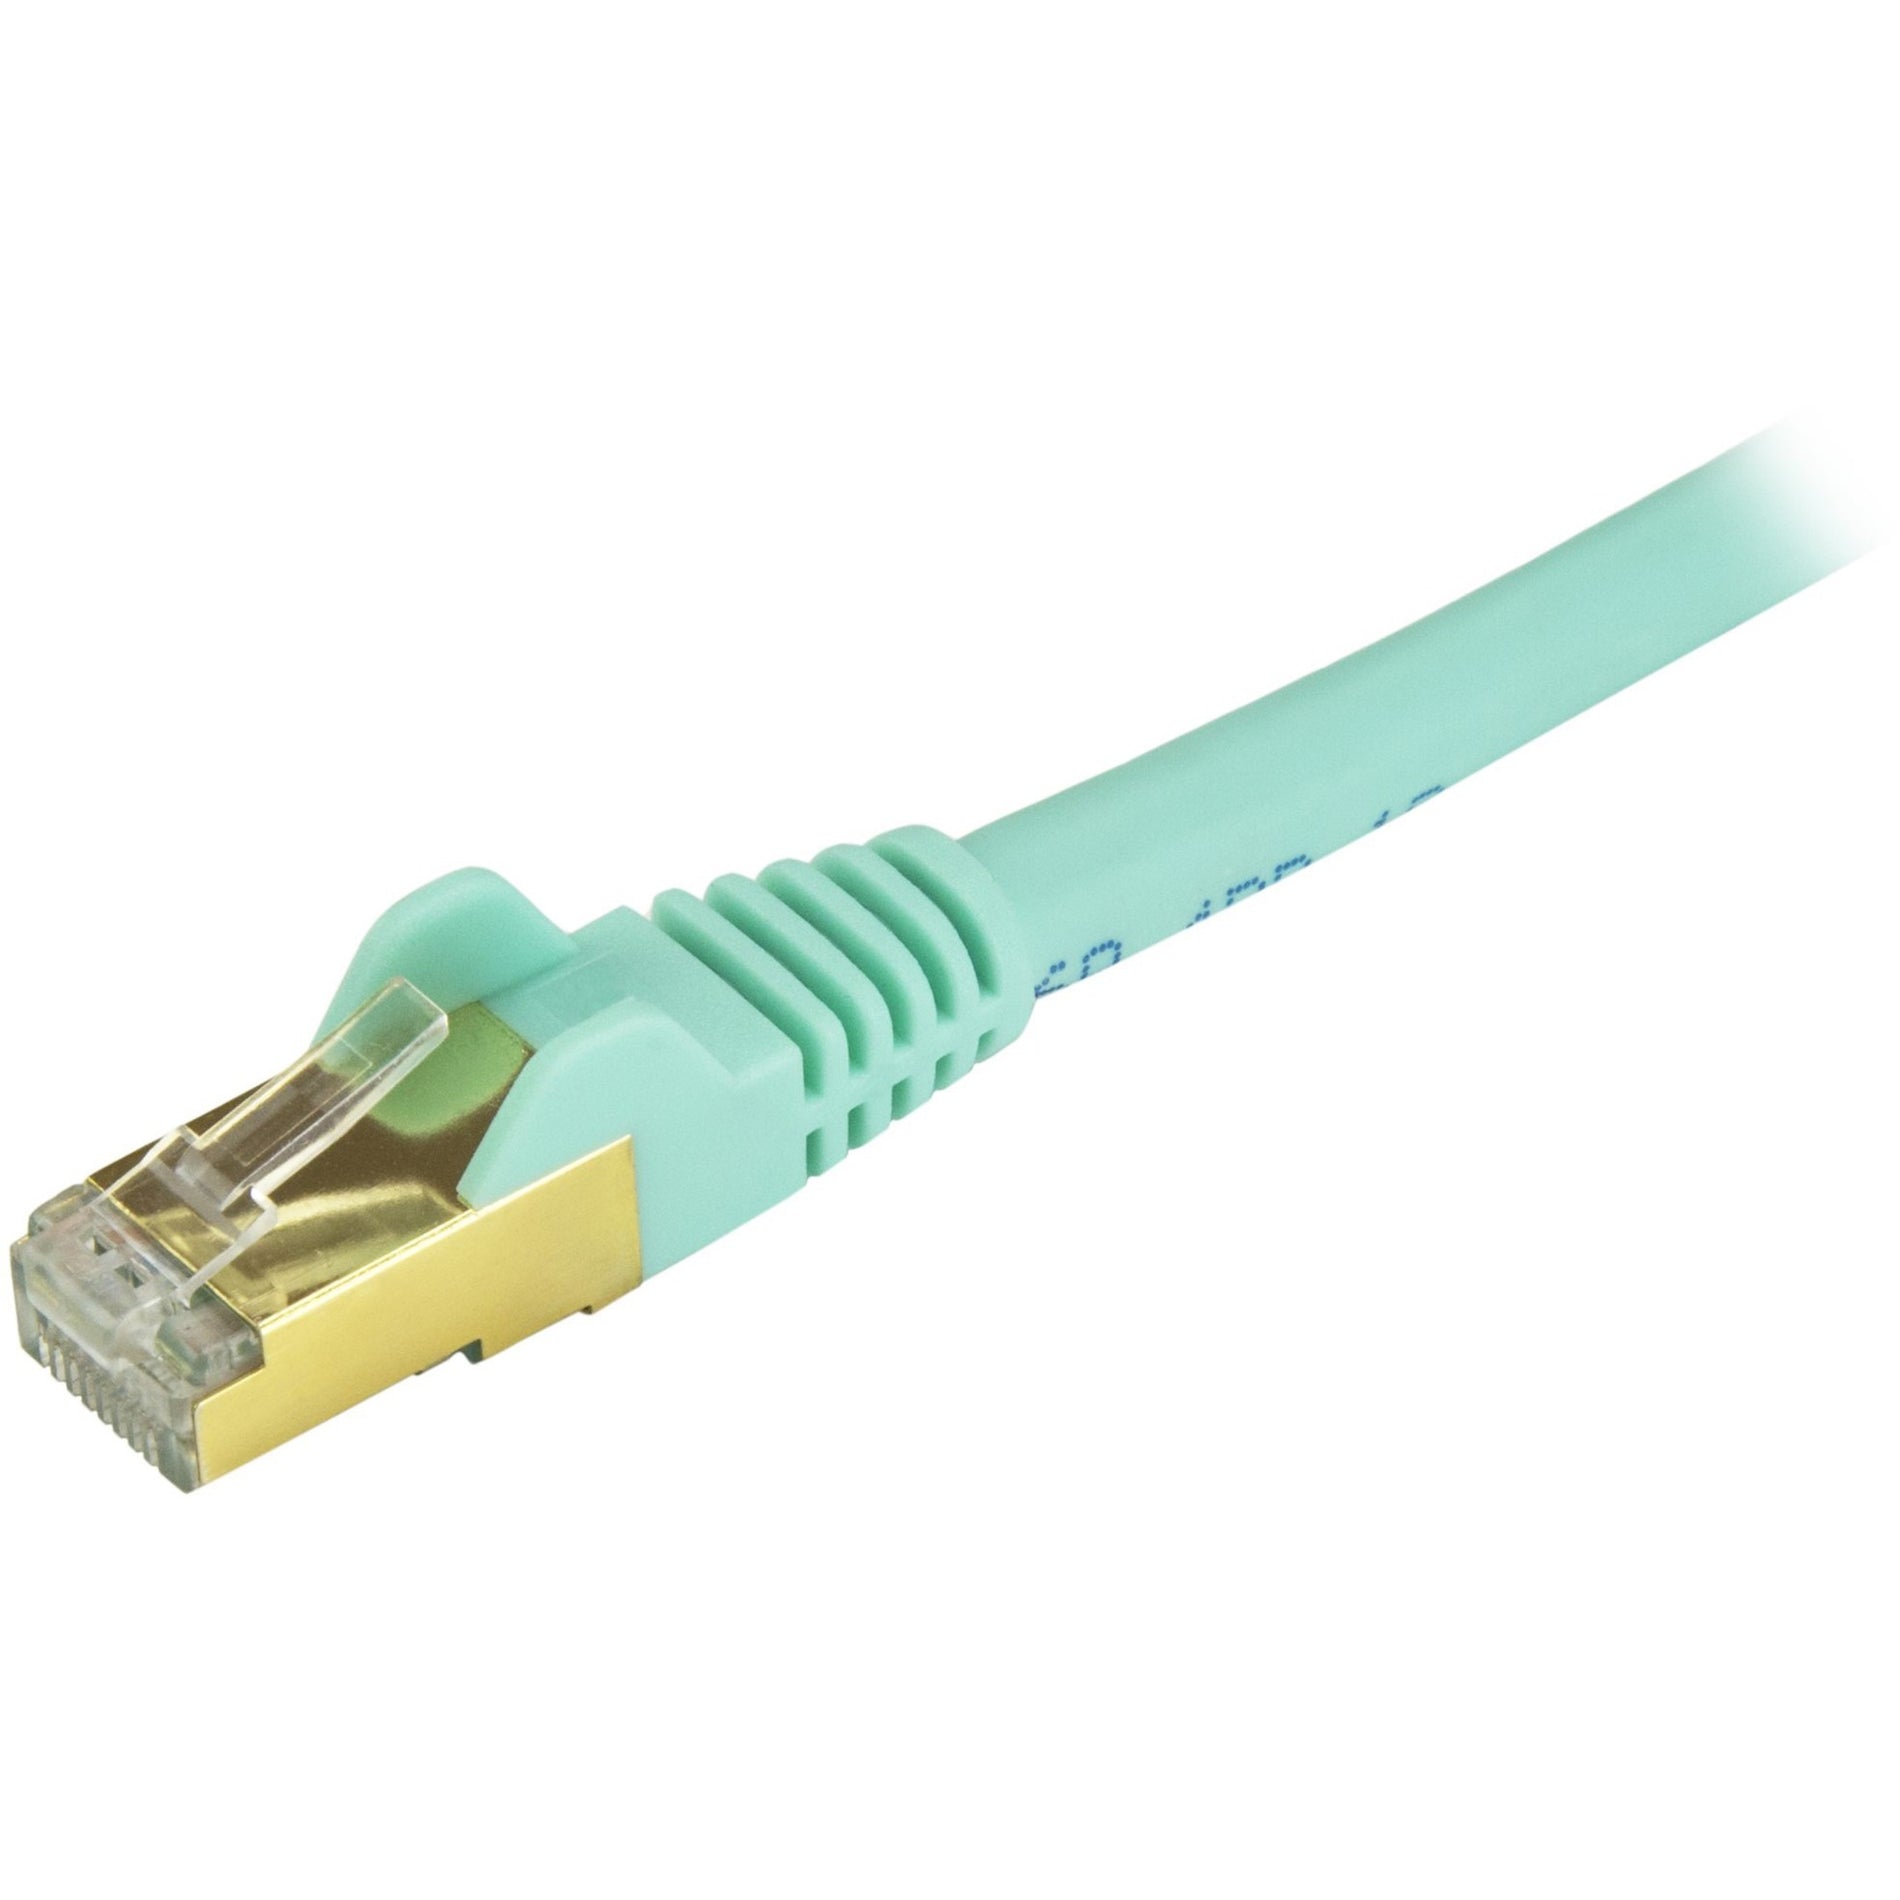 Marca: StarTech.com Cable de conexión Ethernet Cat6a blindado (STP) de 8 pies Aqua cable Ethernet RJ45 sin enganches